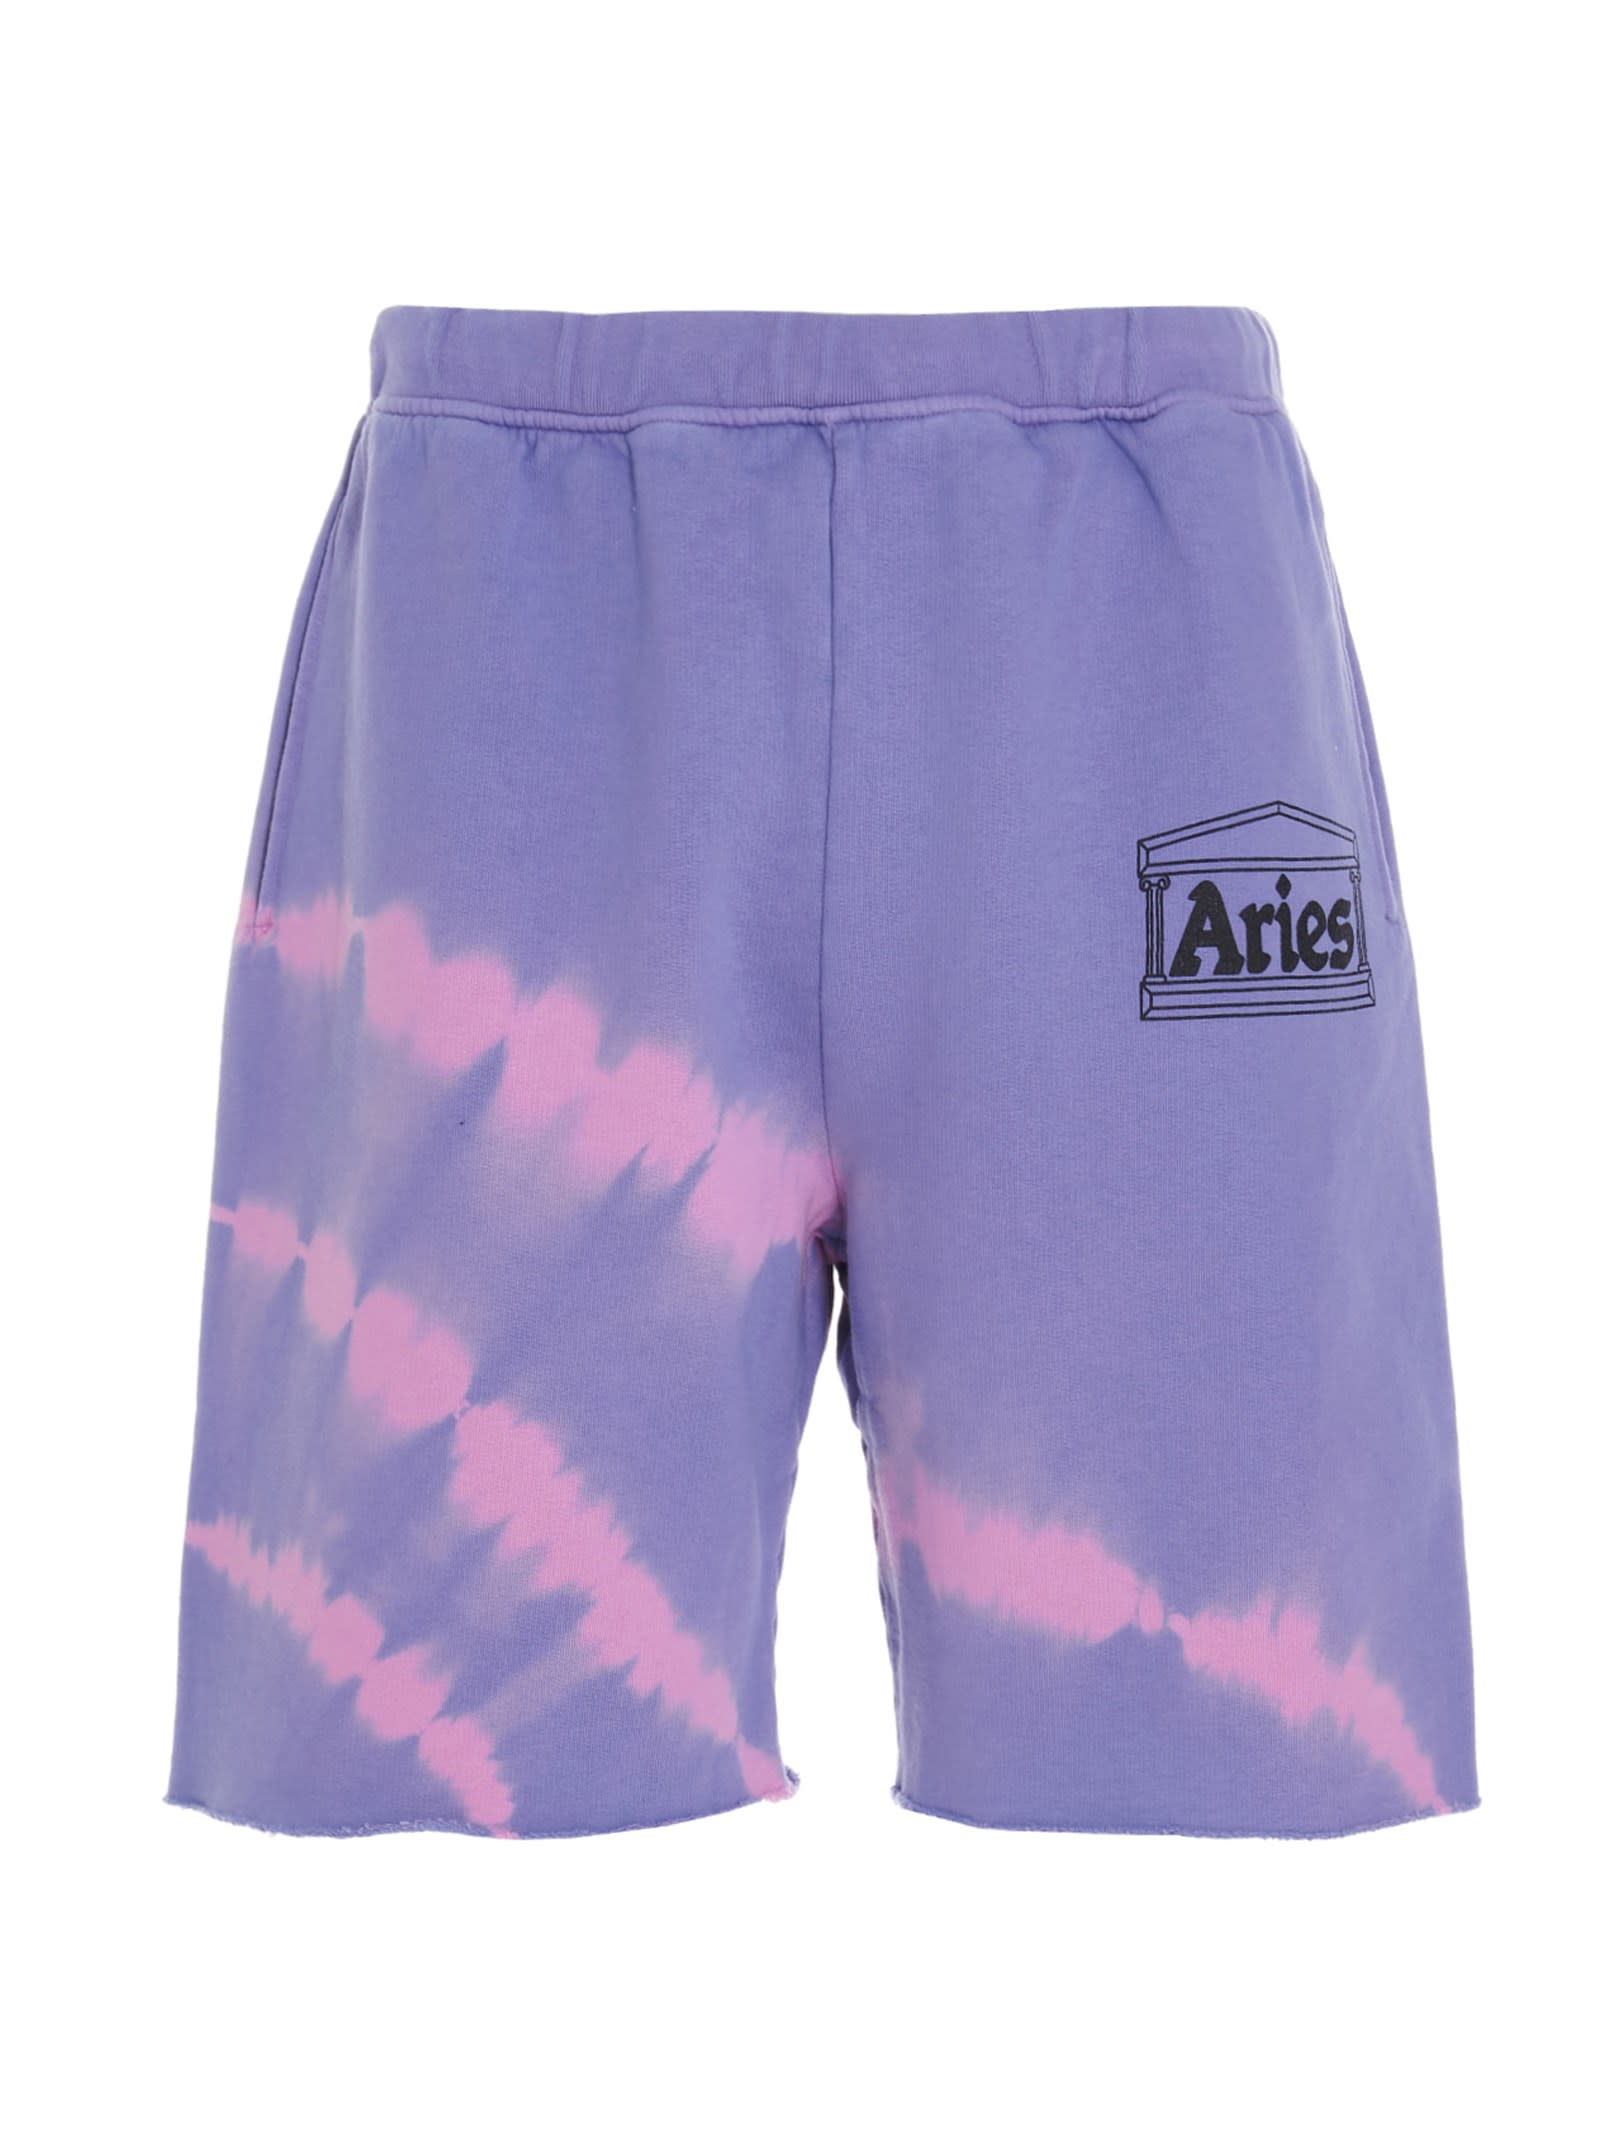 Aries Tie Dye Temple Bermuda Shorts